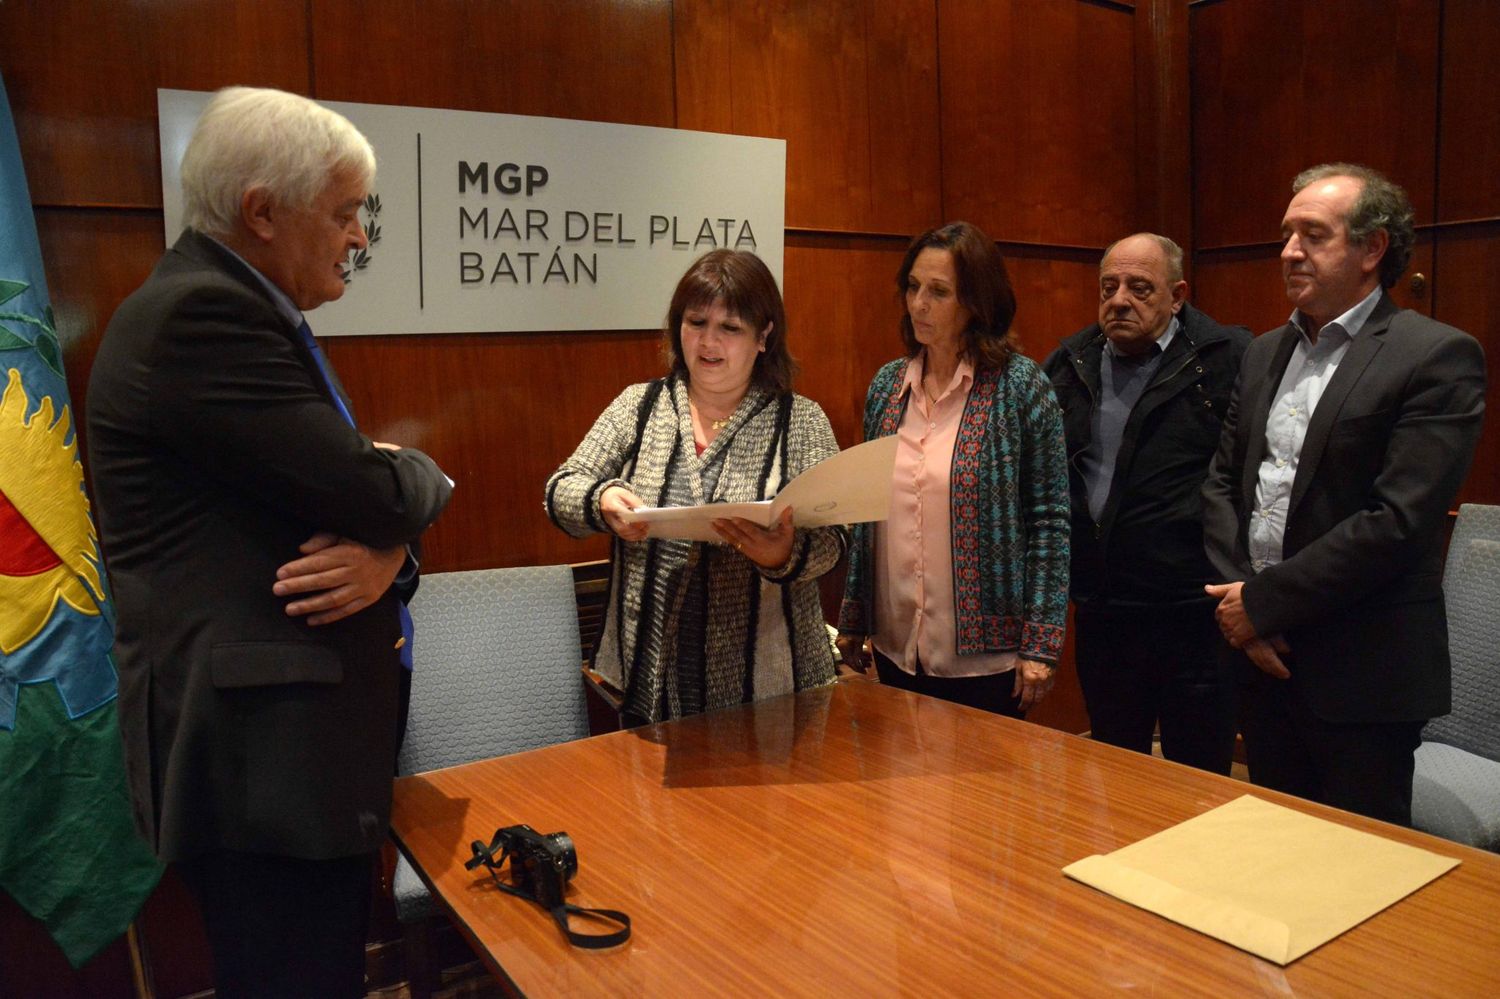 Arroyo recibió al arquitecto que remodelará el chalet de Mariano Mores